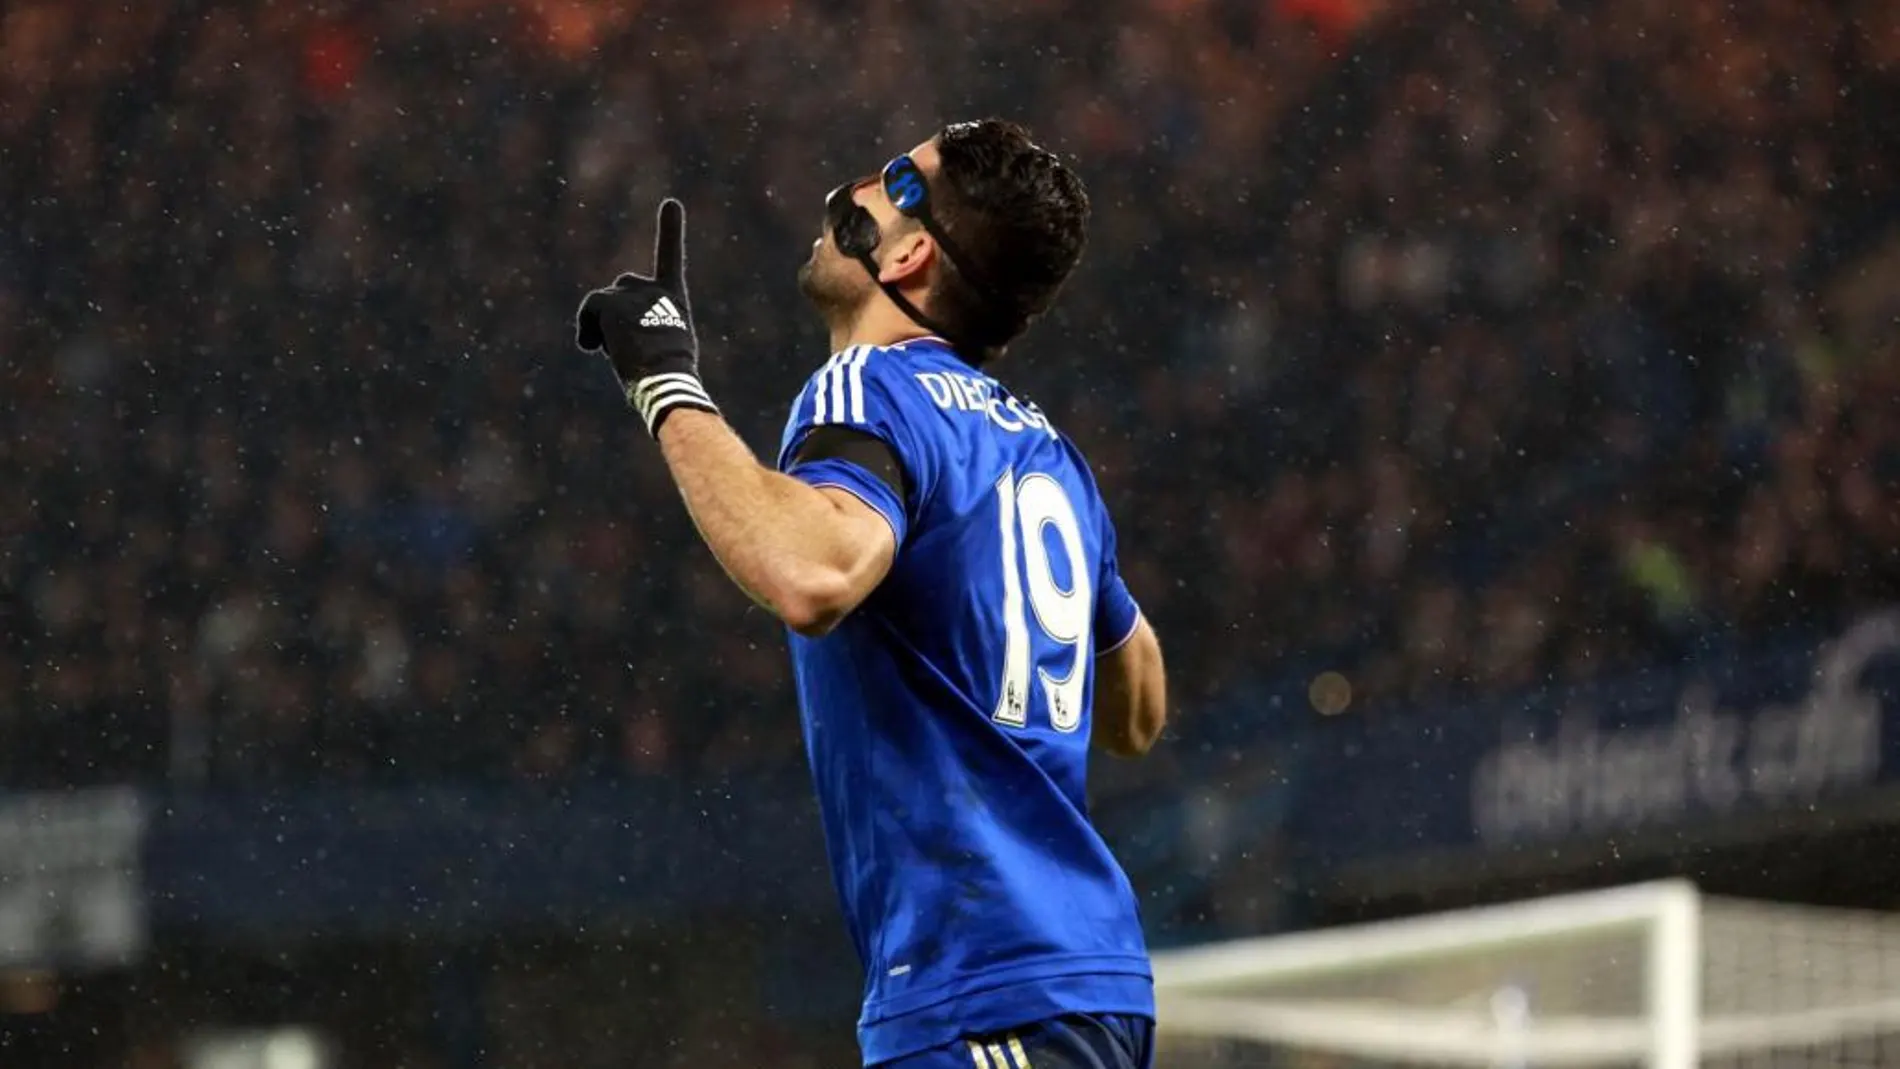 El jugador del Chelsea Diego Costa